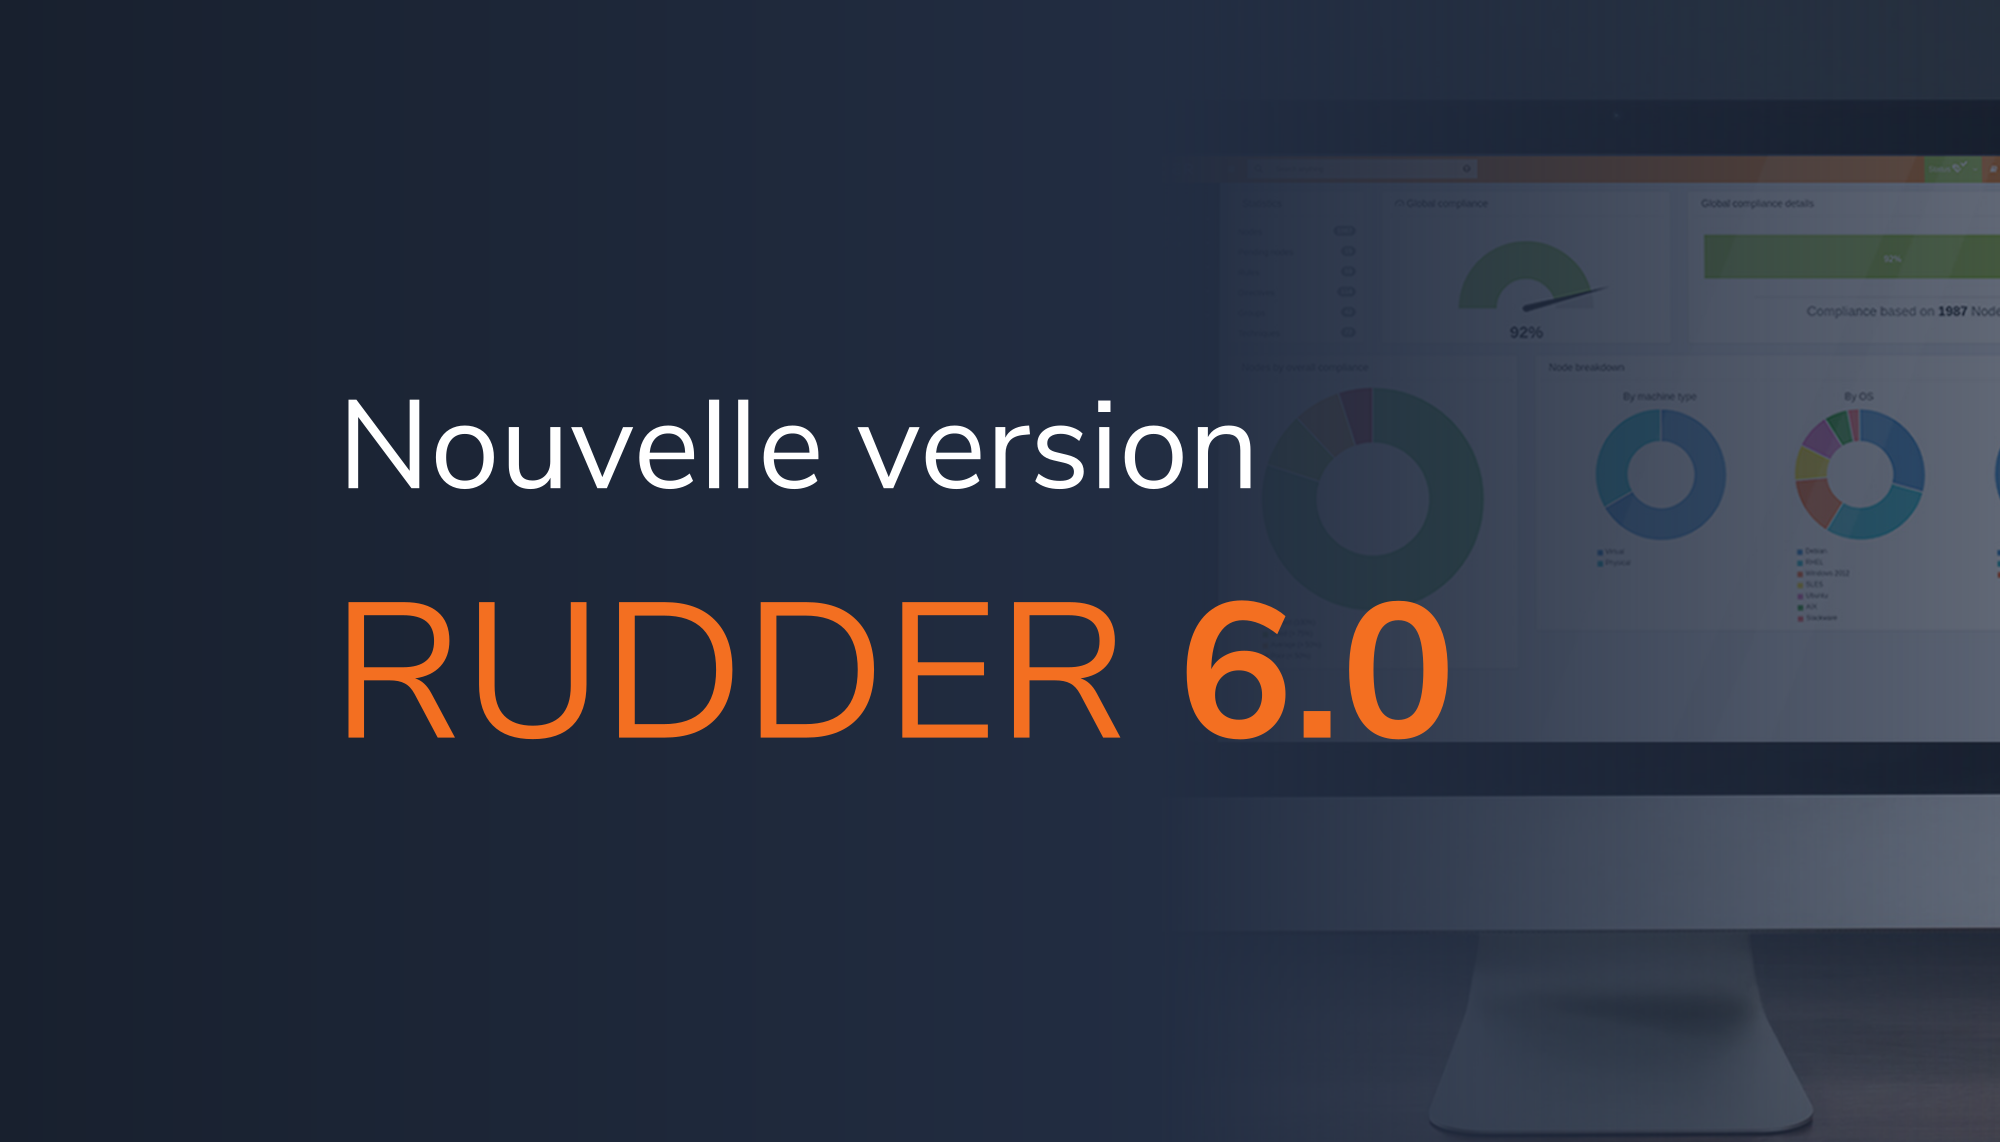 RUDDER 6.0 release